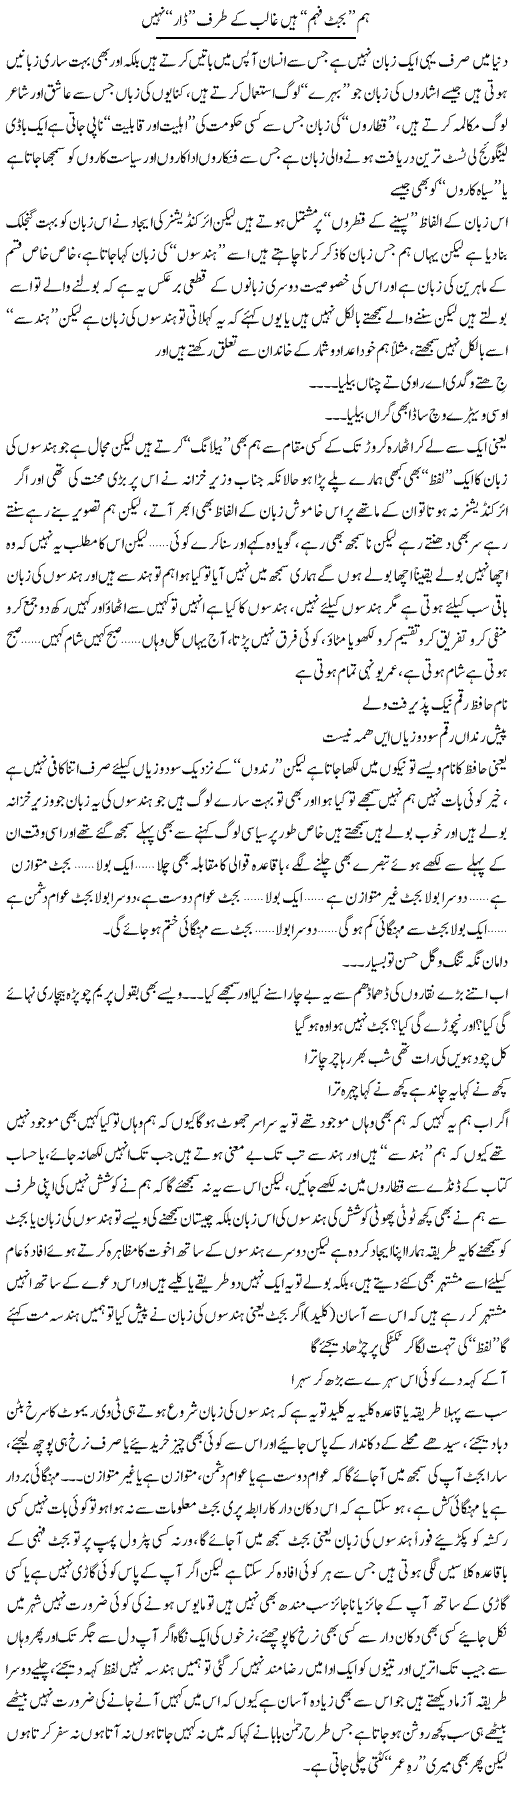 Hum Budget Feham Hain Ghalib K Taraf Dar Nahi | Saad Ullah Jan Barq | Daily Urdu Columns